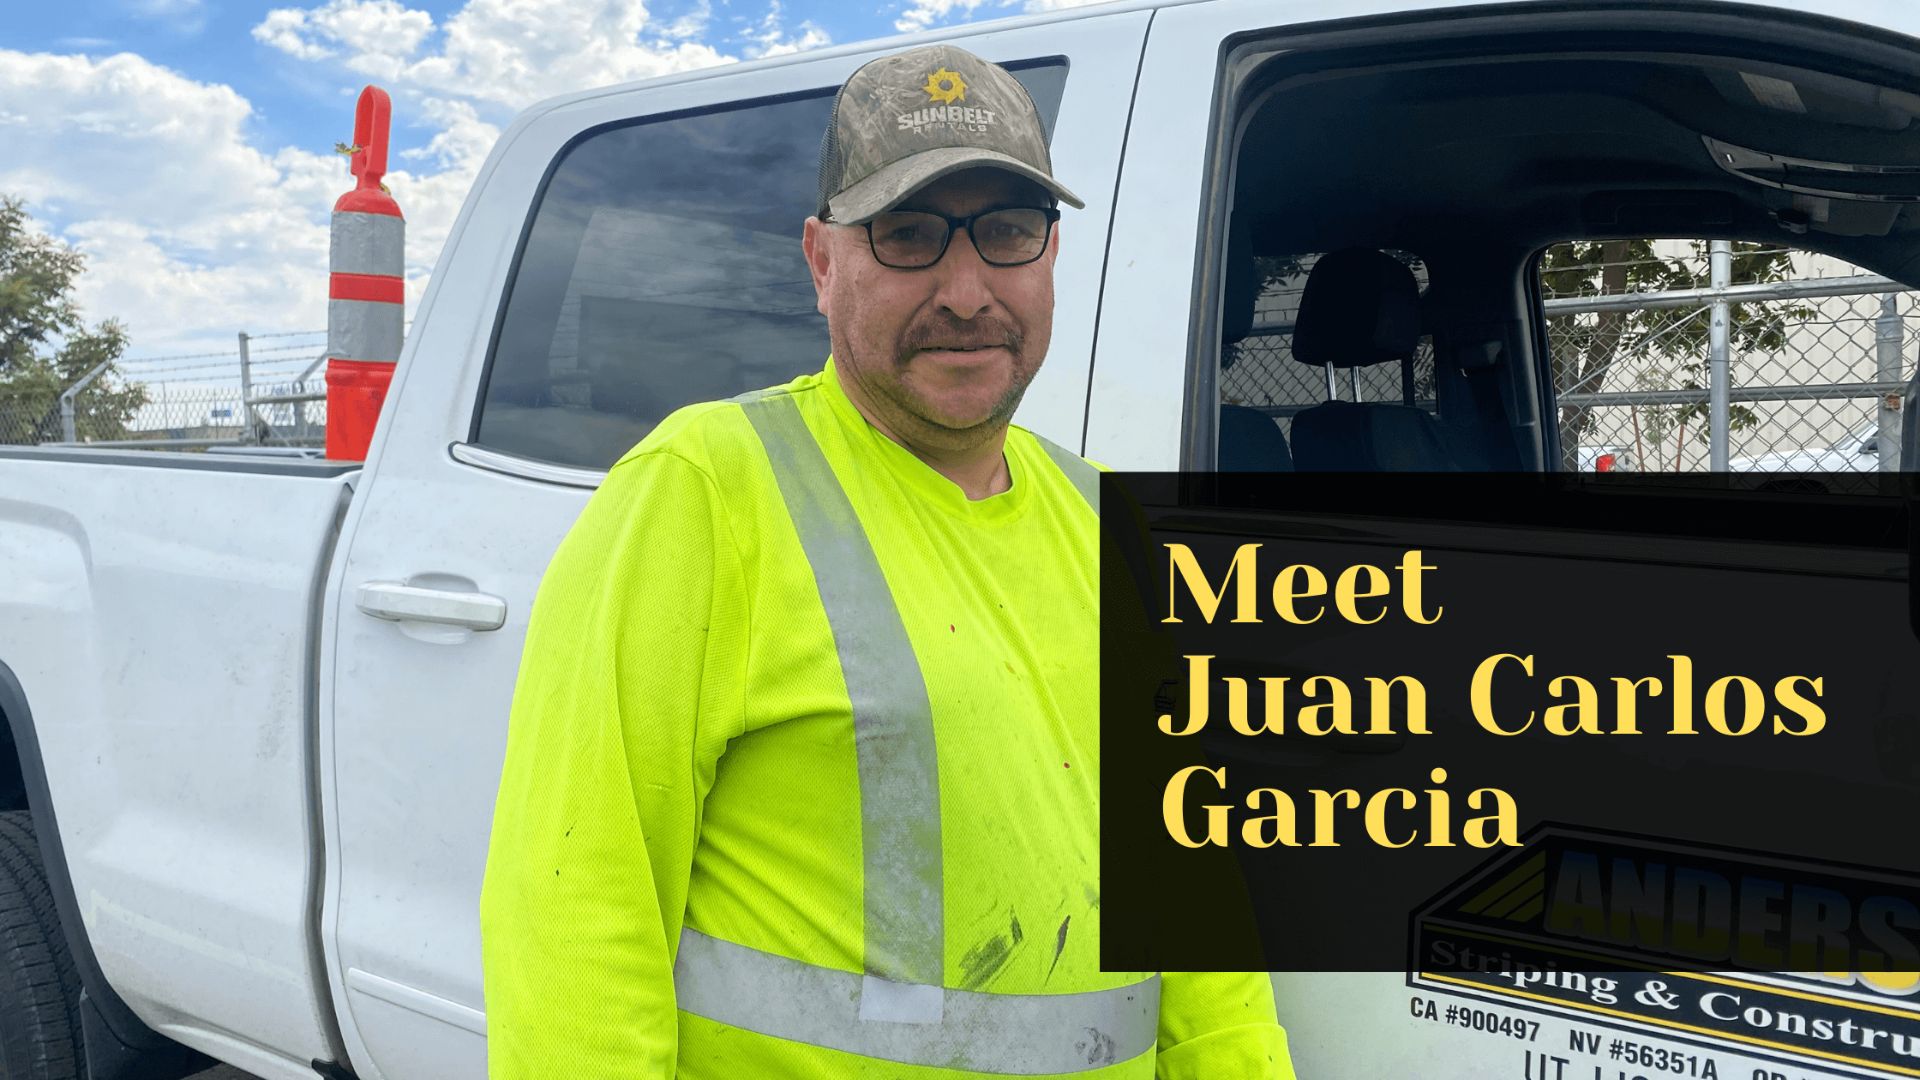 Meet Juan Carlos Garcia